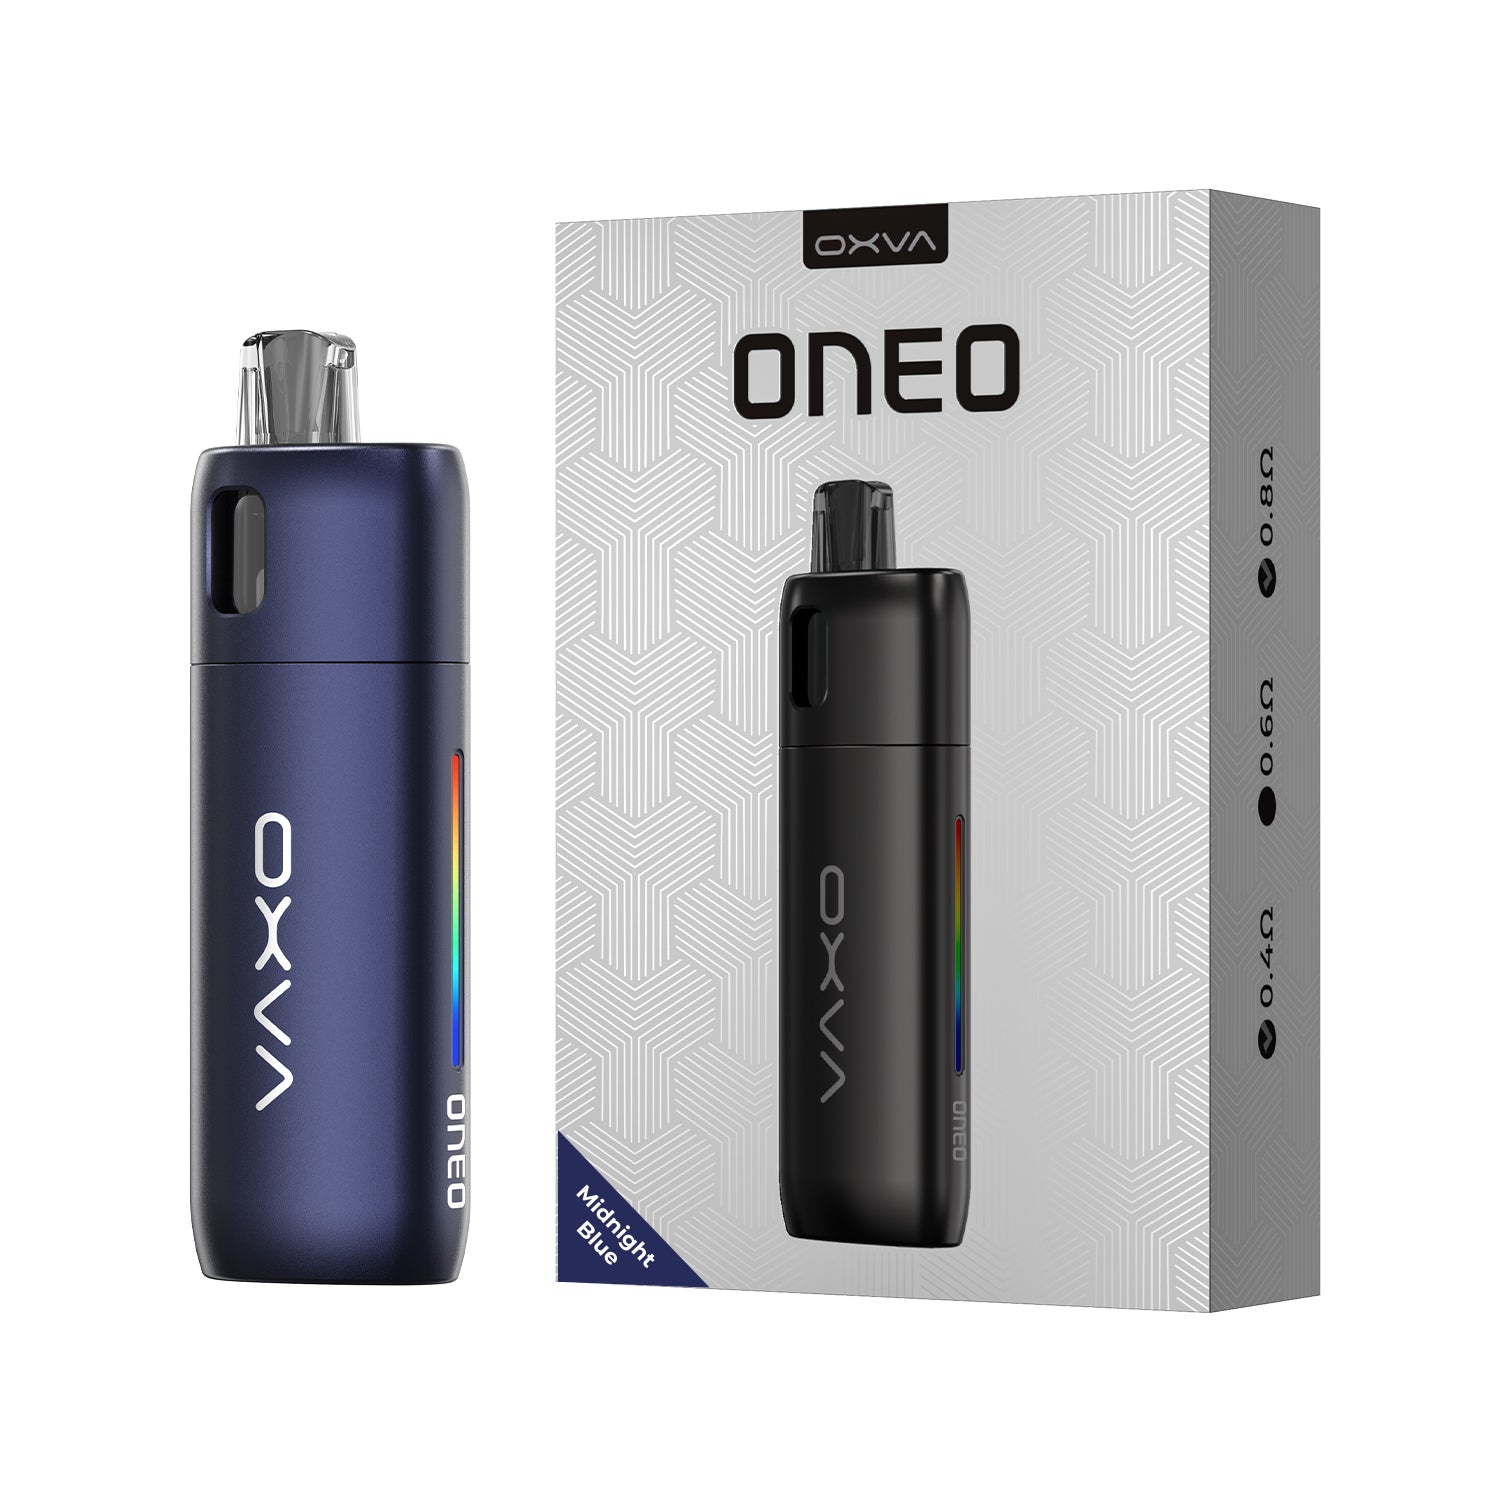 OXVA Oneo Pod Kit 1600mAh